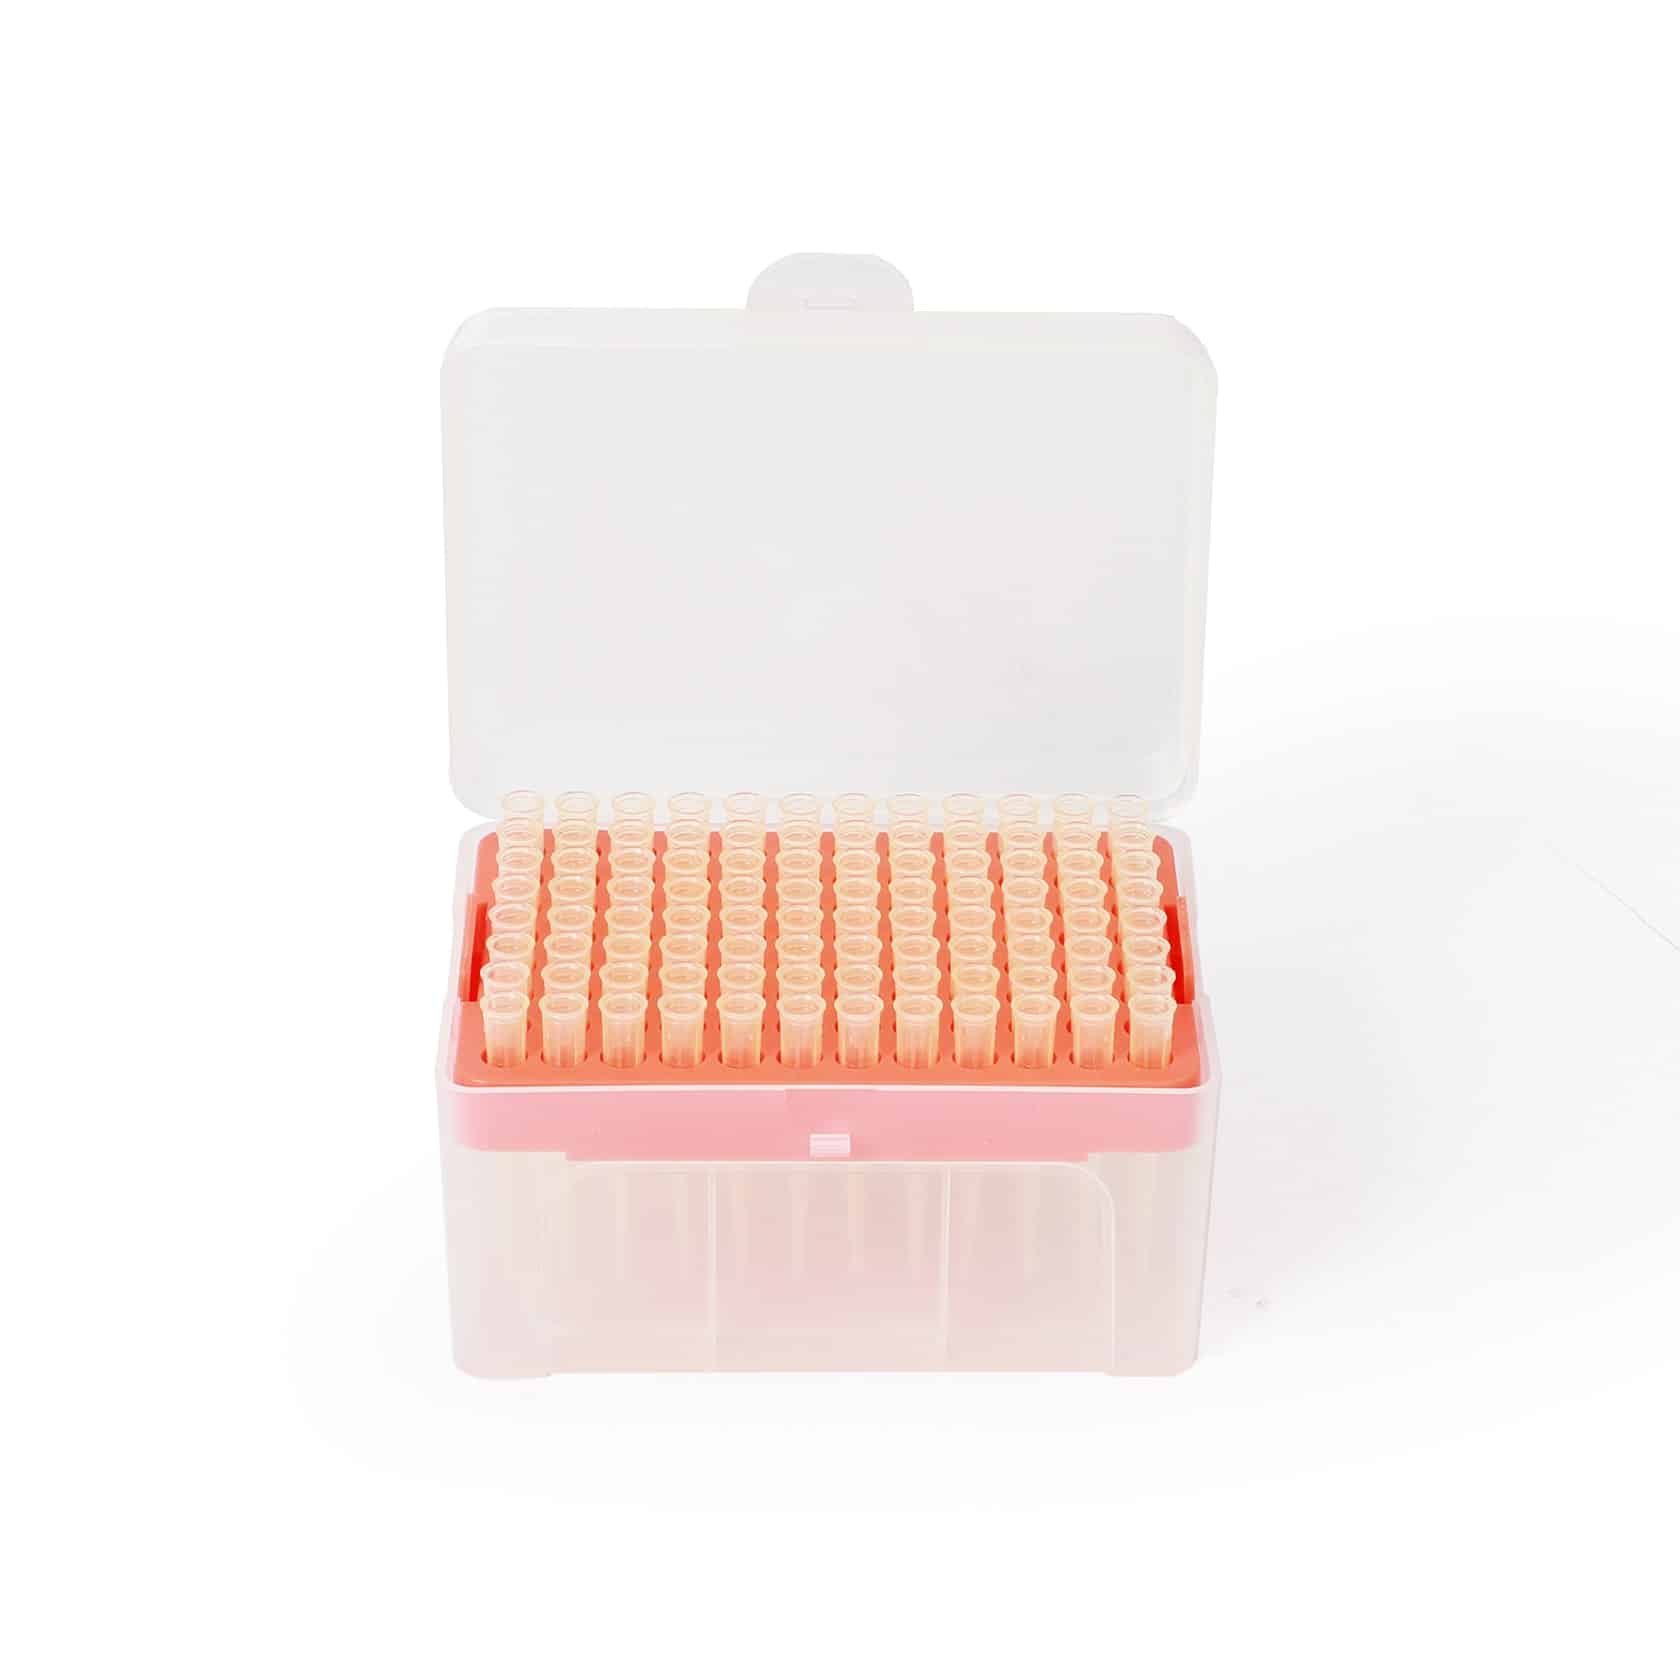 Eine Aufbewahrungsbox aus Kunststoff mit Reihen ordentlich angeordneter kleiner Fläschchen mit orangefarbenen Deckeln vor weißem Hintergrund. Der Deckel der Box ist offen und enthält eine Halterung für 96 Altruan Sterile Pipettenspitzen 100 / 200µl, mit Filter.